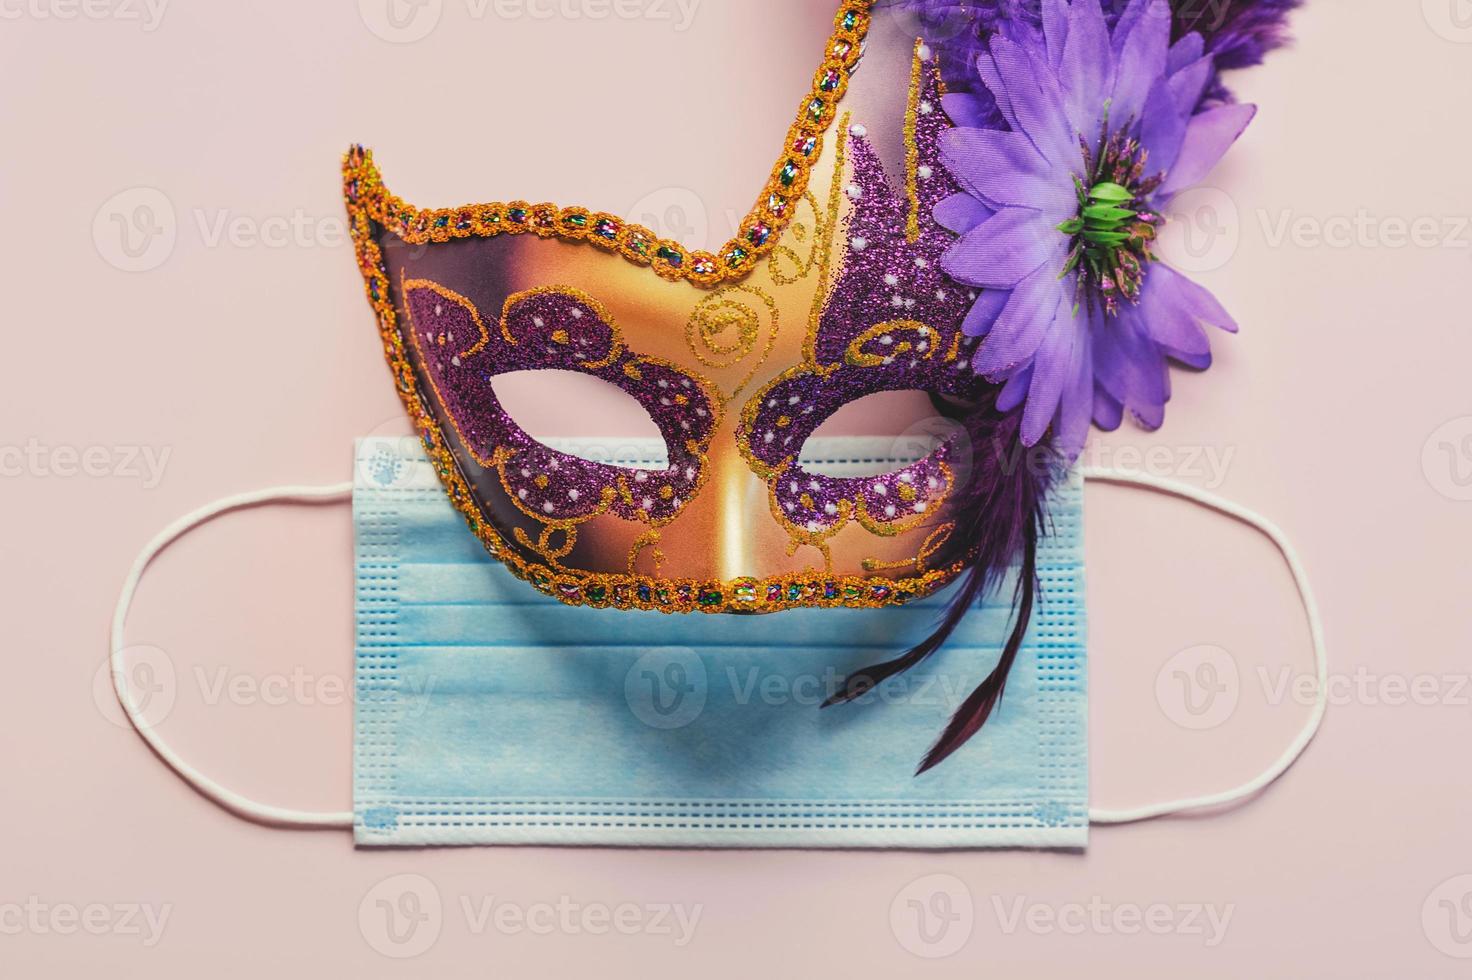 conceito de carnaval durante o covid-19. máscara de carnaval veneziano com máscara cirúrgica protetora. conceito de celebração de carnaval foto